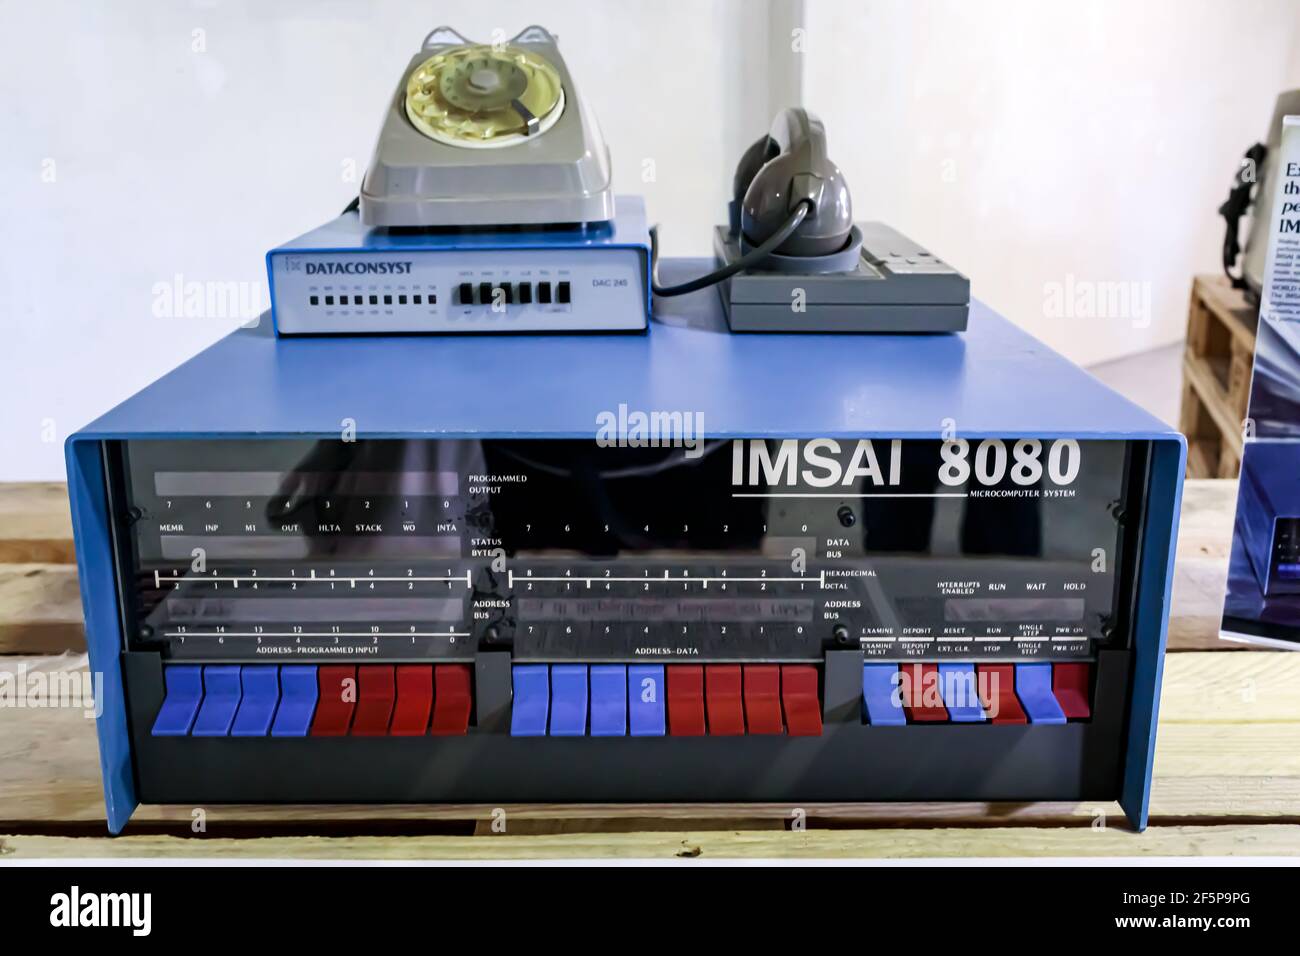 Roma, Italia - 27 aprile 2019: Il primo microcomputer IMSAI 8080, uno degli strumenti di hacking utilizzati dal personaggio principale nel film Wargames 1983. Foto Stock